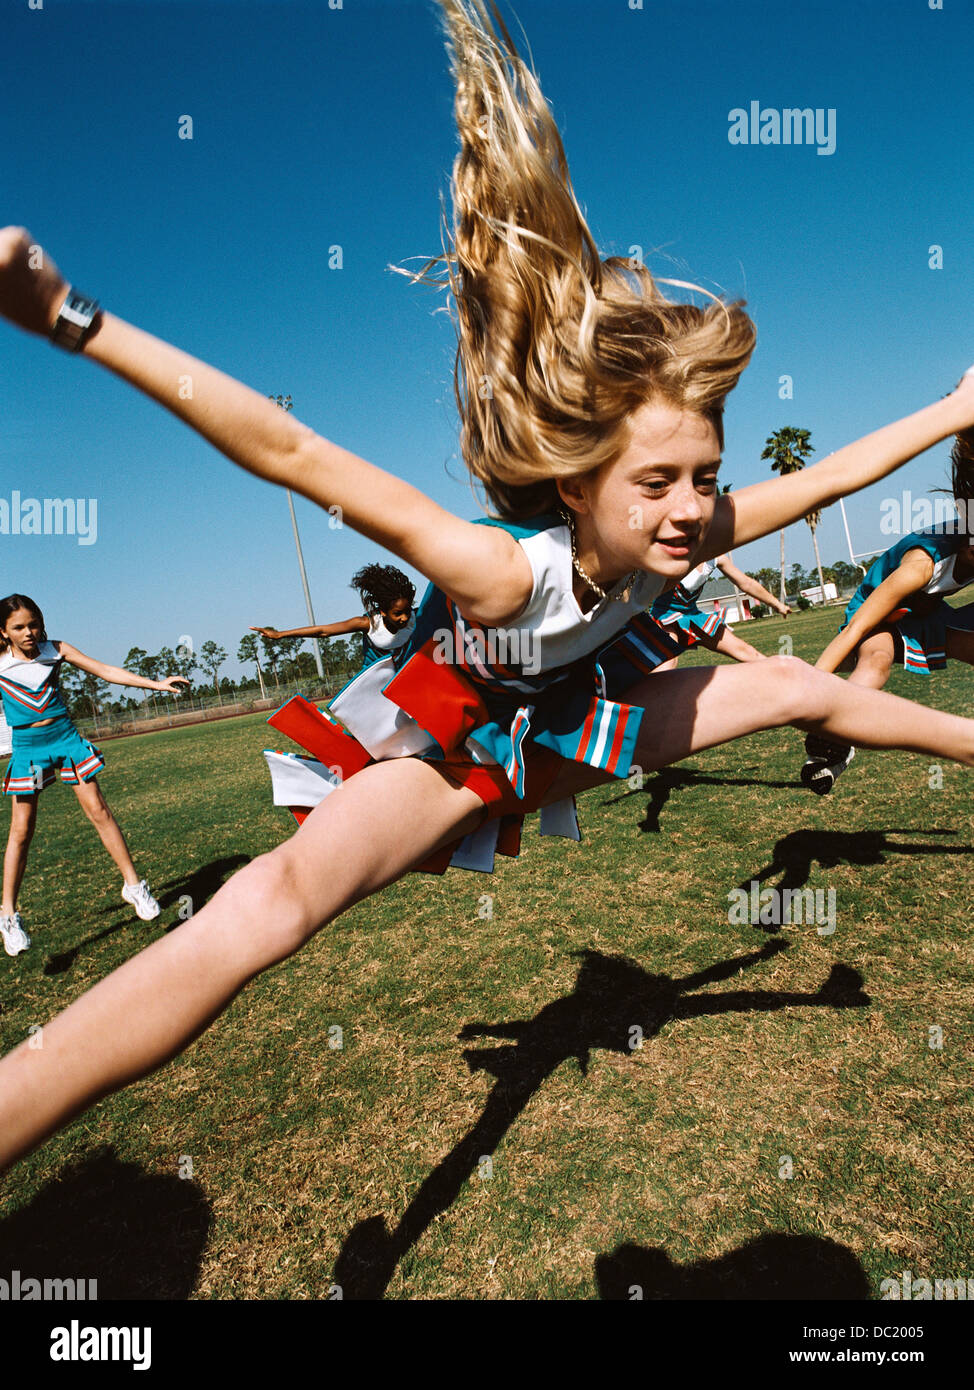 Les jeunes cheerleaders les opérations routinières sur terrain de football Banque D'Images